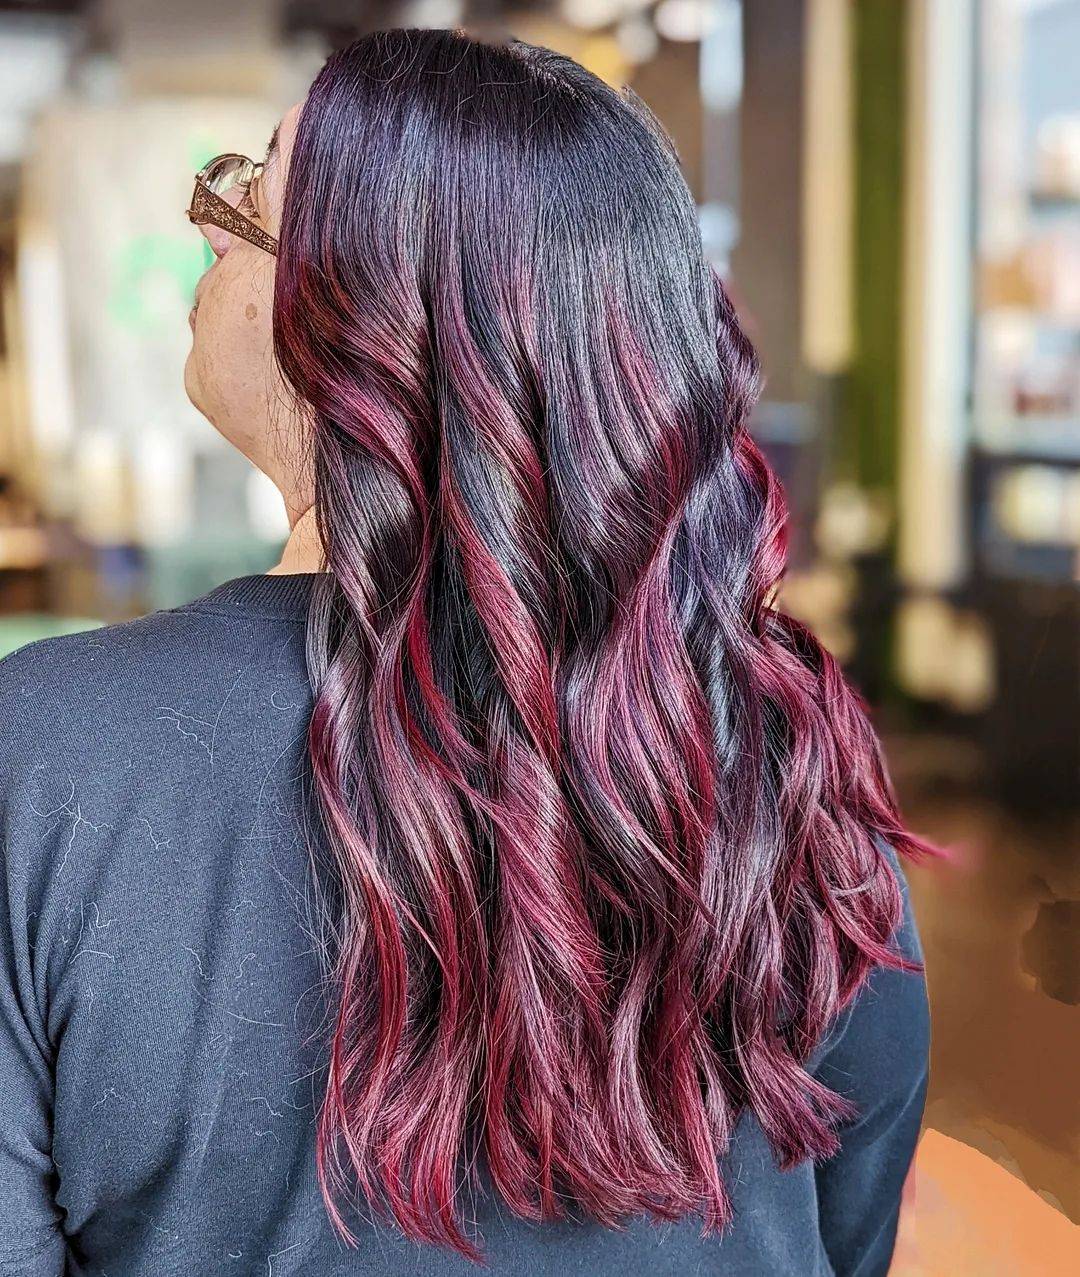 Burgundy hair color 207 burgundy hair color | burgundy hair color for women | burgundy hair color highlights Burgundy Hair Color